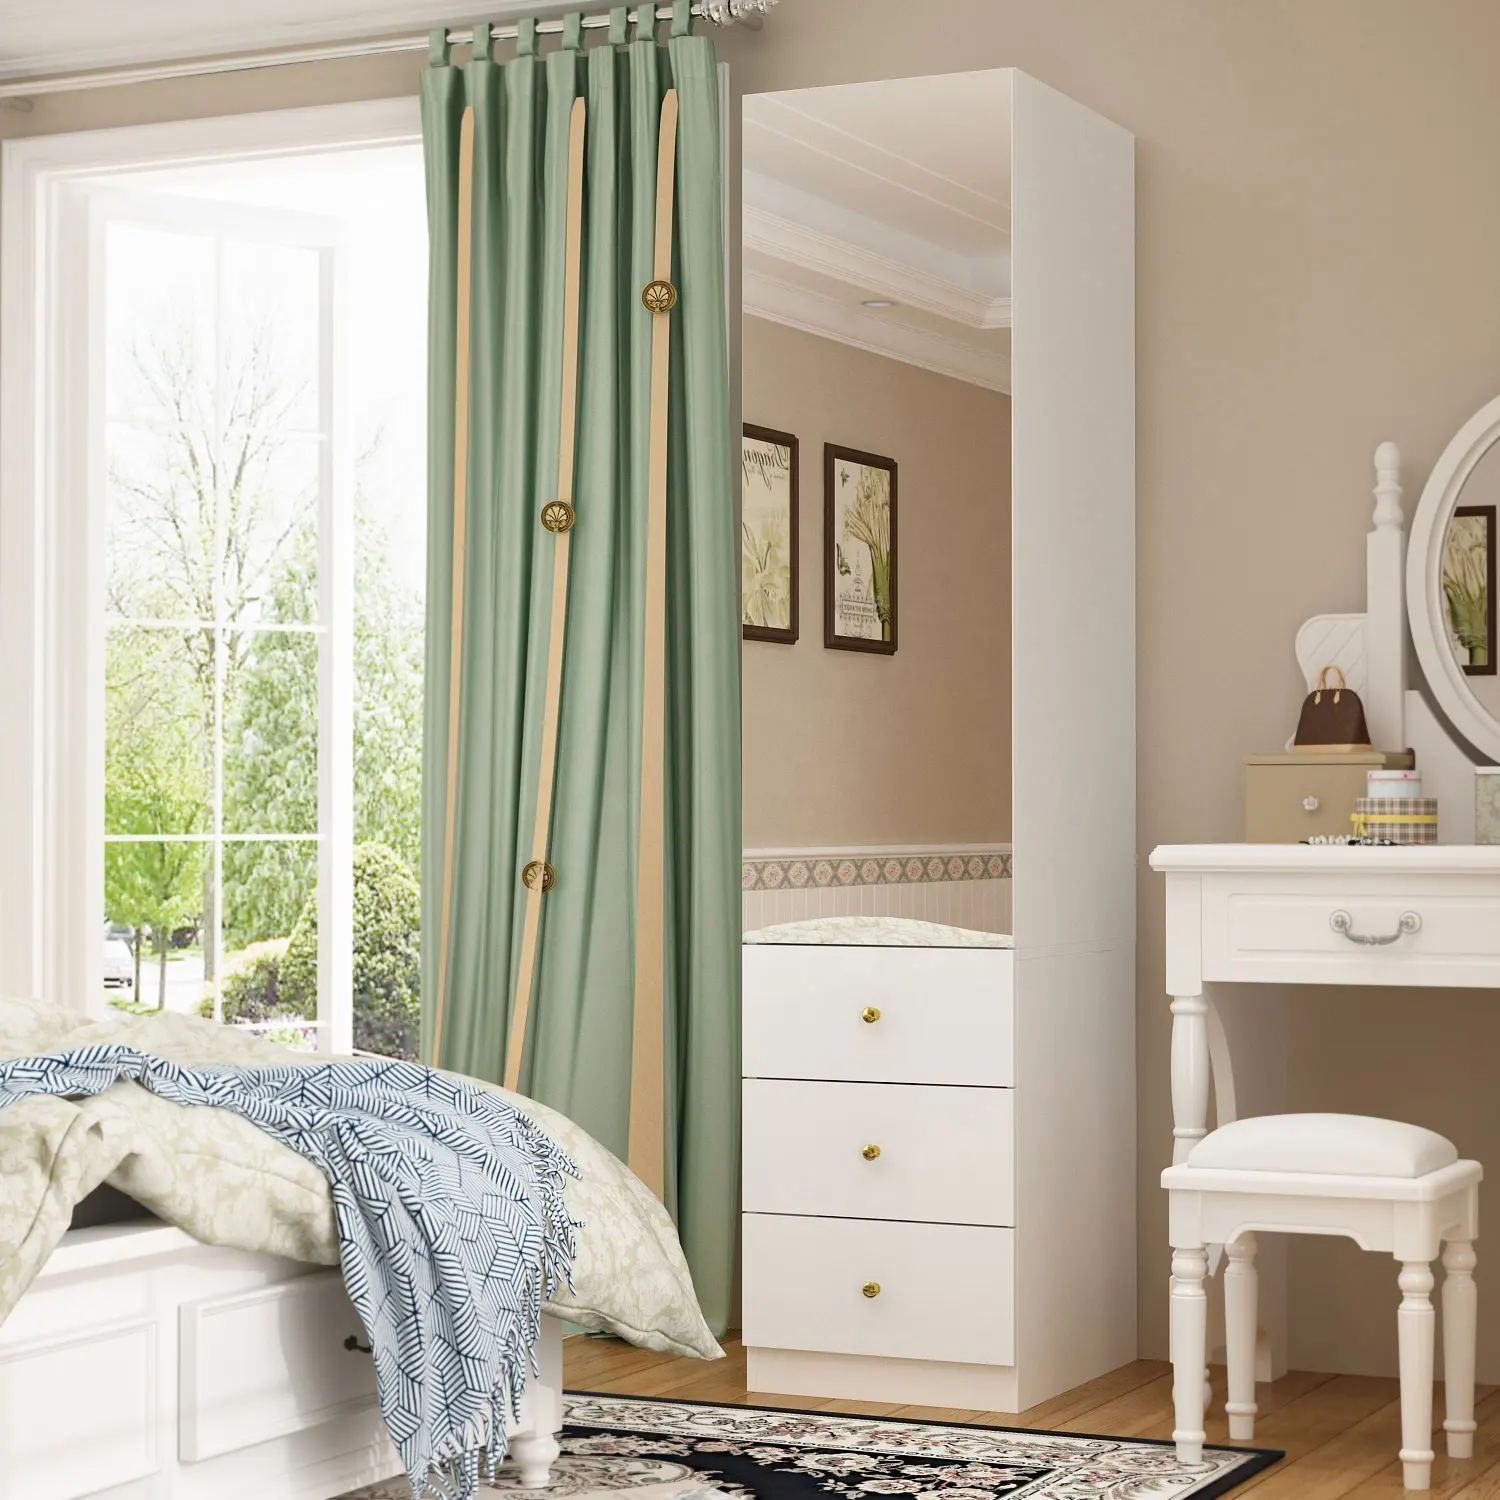 Moderno minimalista espelhado único terno da porta para diferentes tamanhos do quarto pode integrar o armário separado mobília gabinete de armazenamento